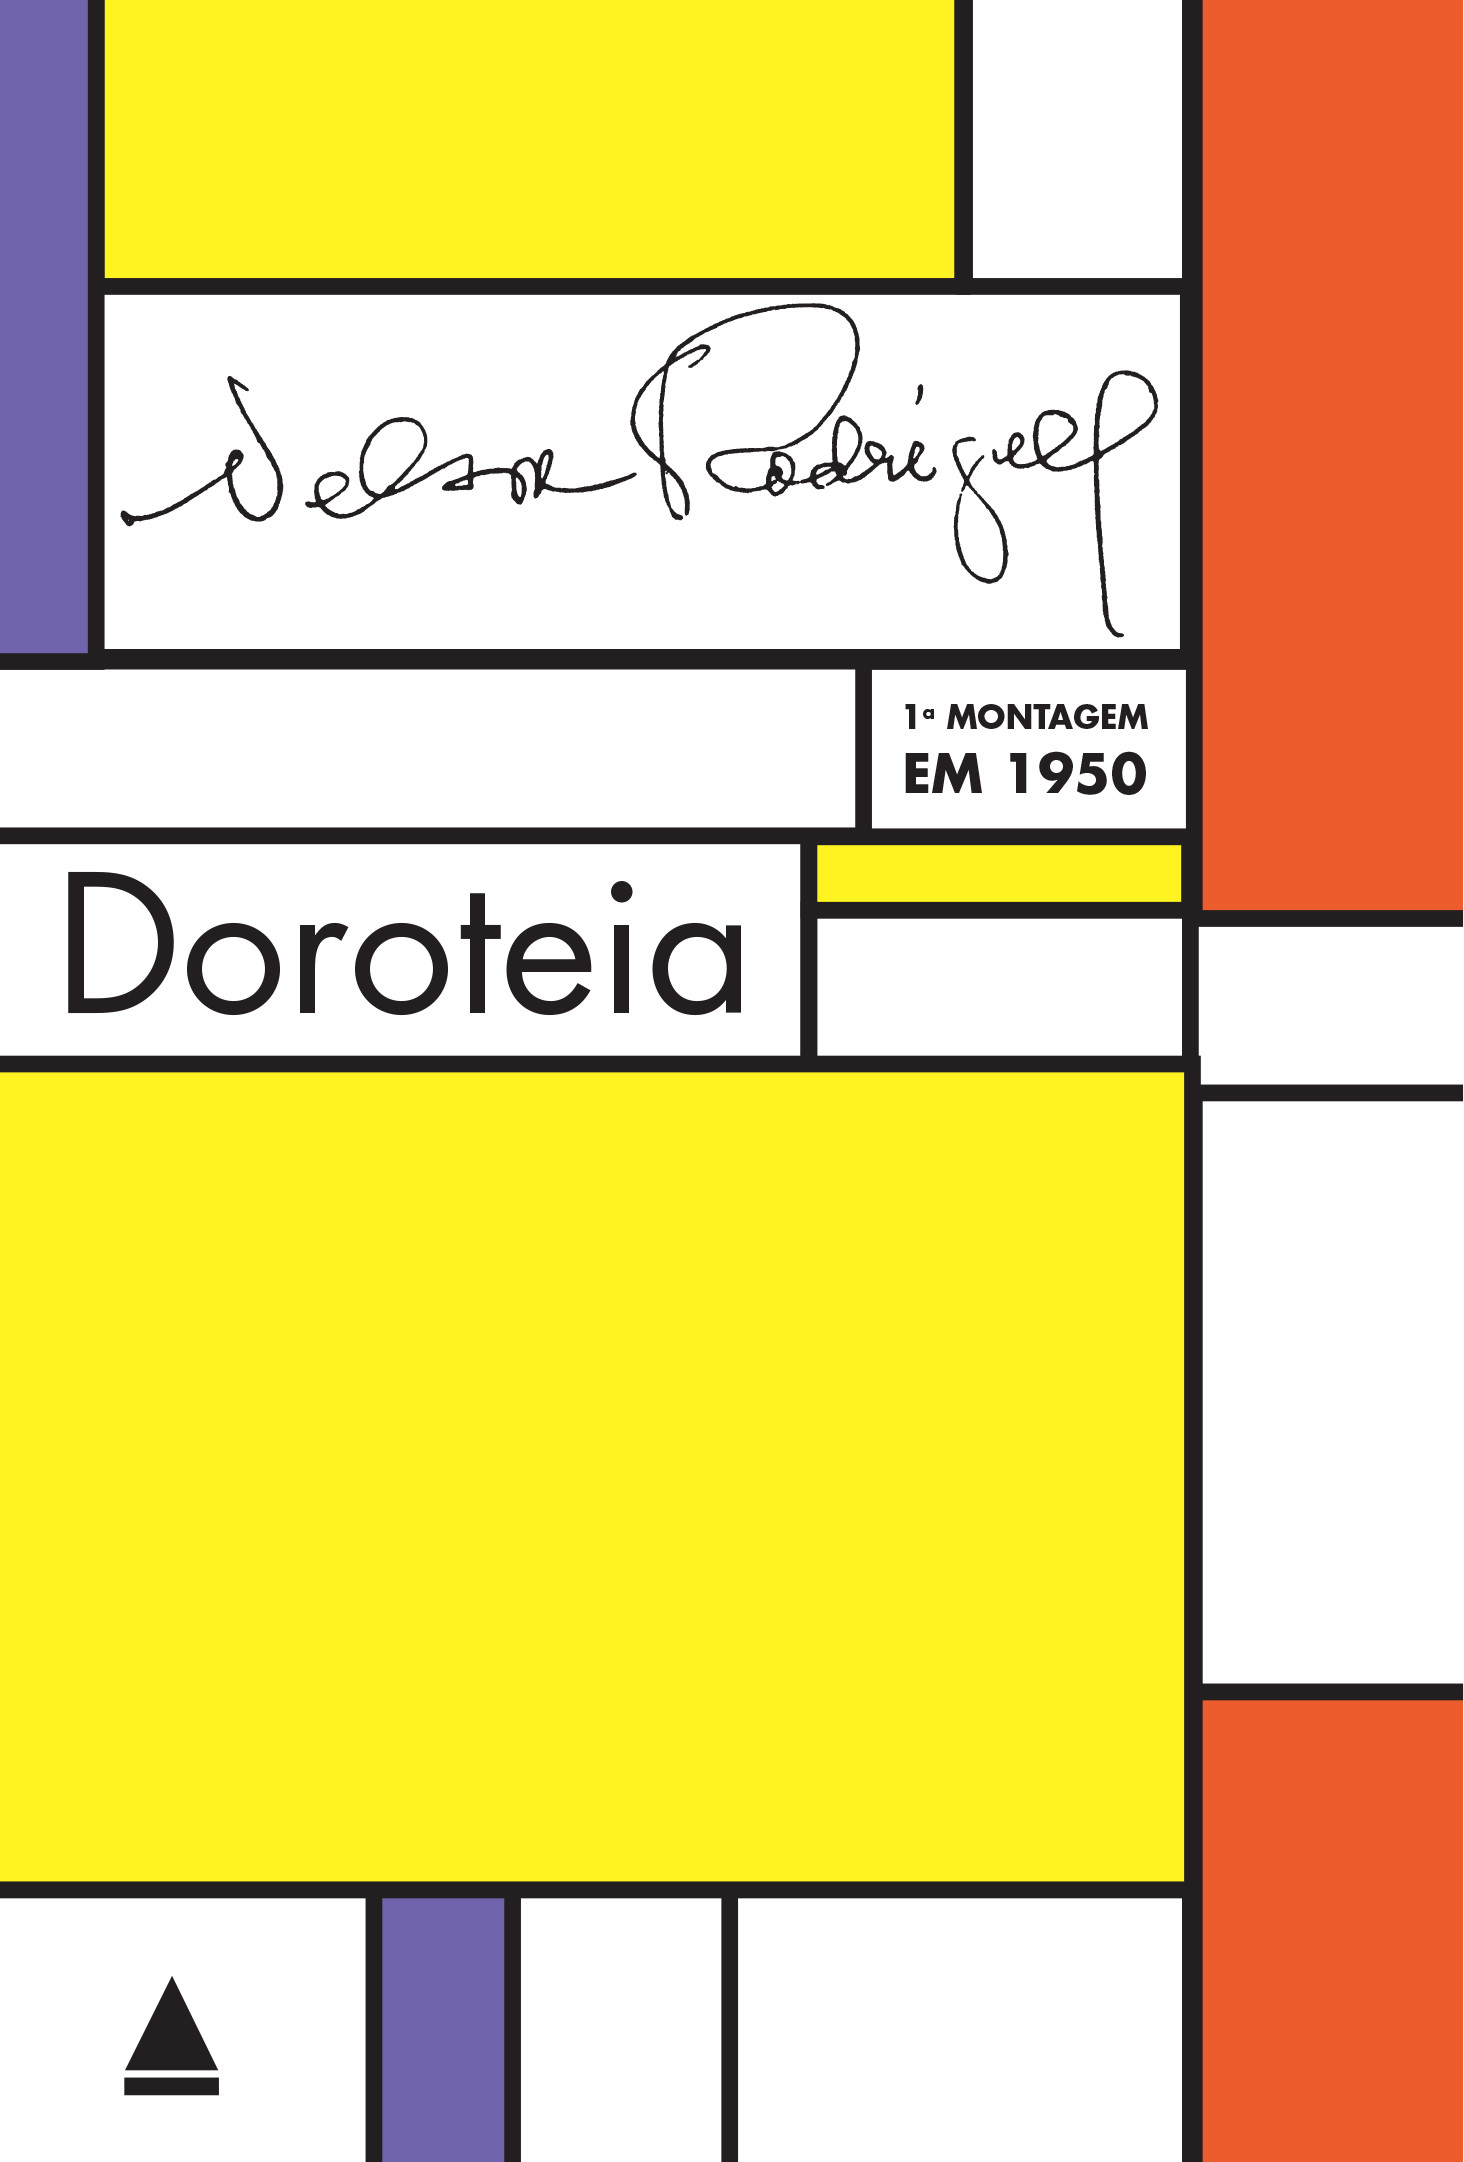 Doroteia – 1950